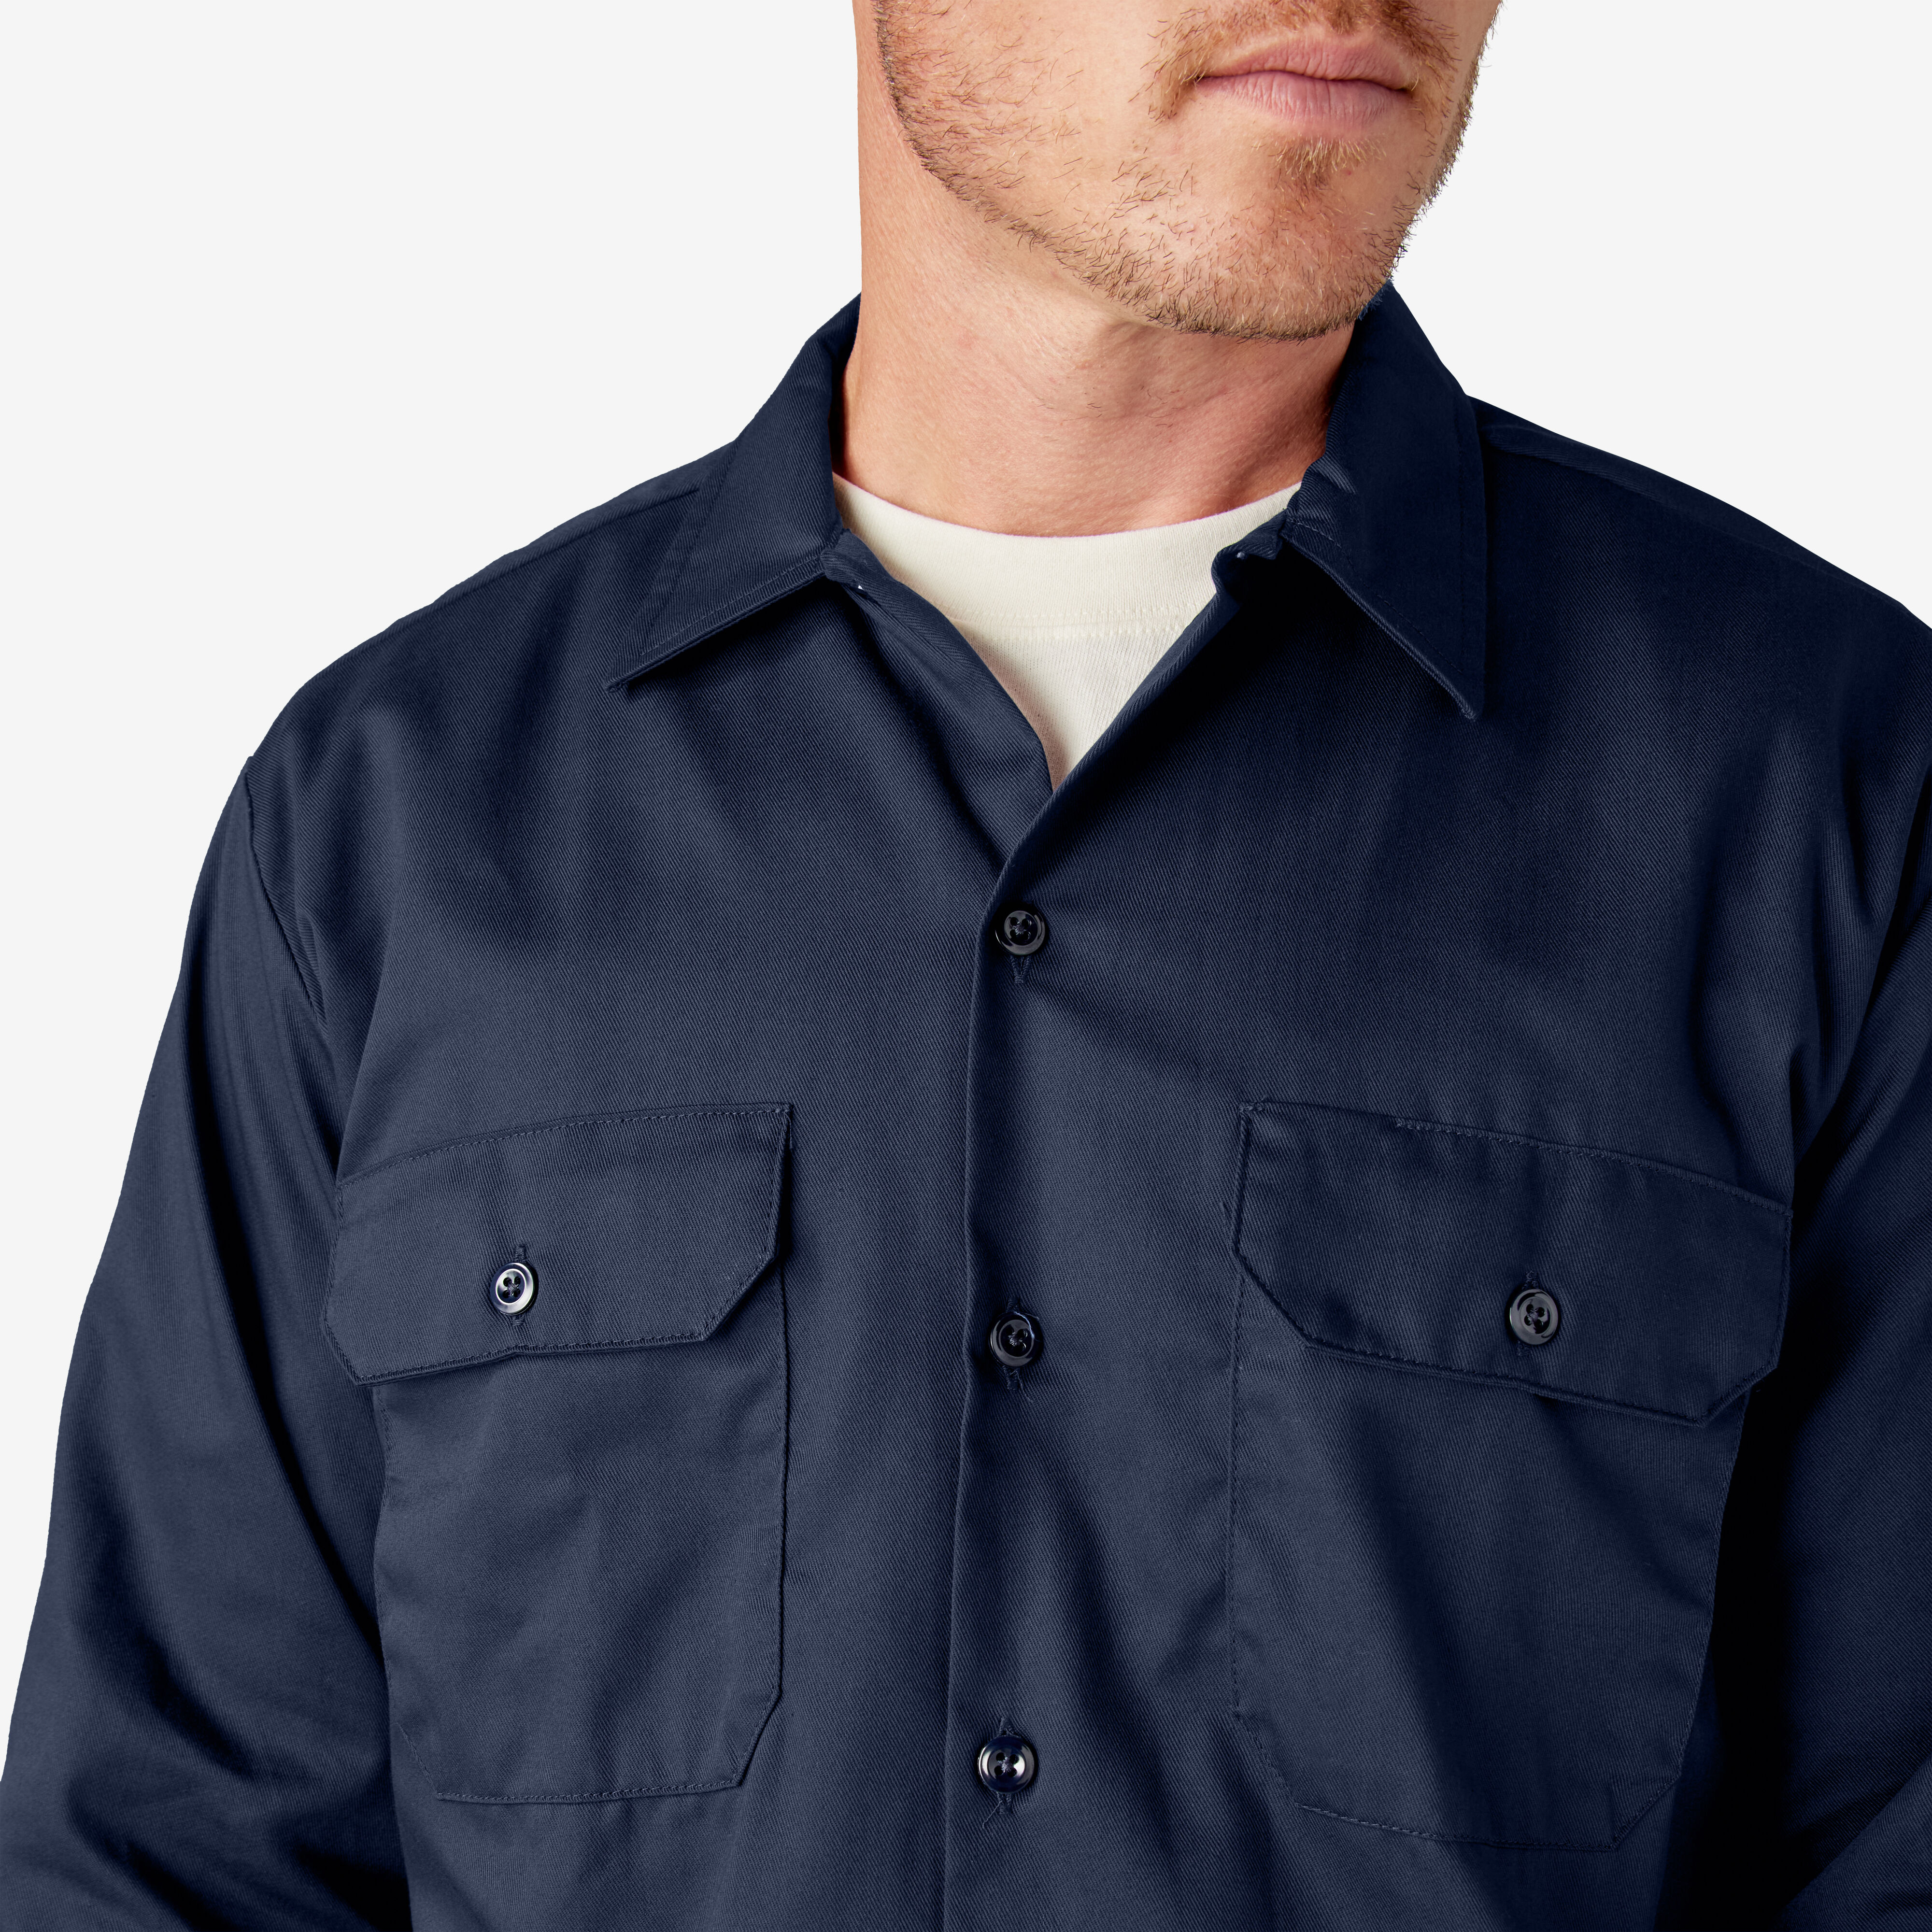 Men's Long Sleeve Work Shirt - Dickies US